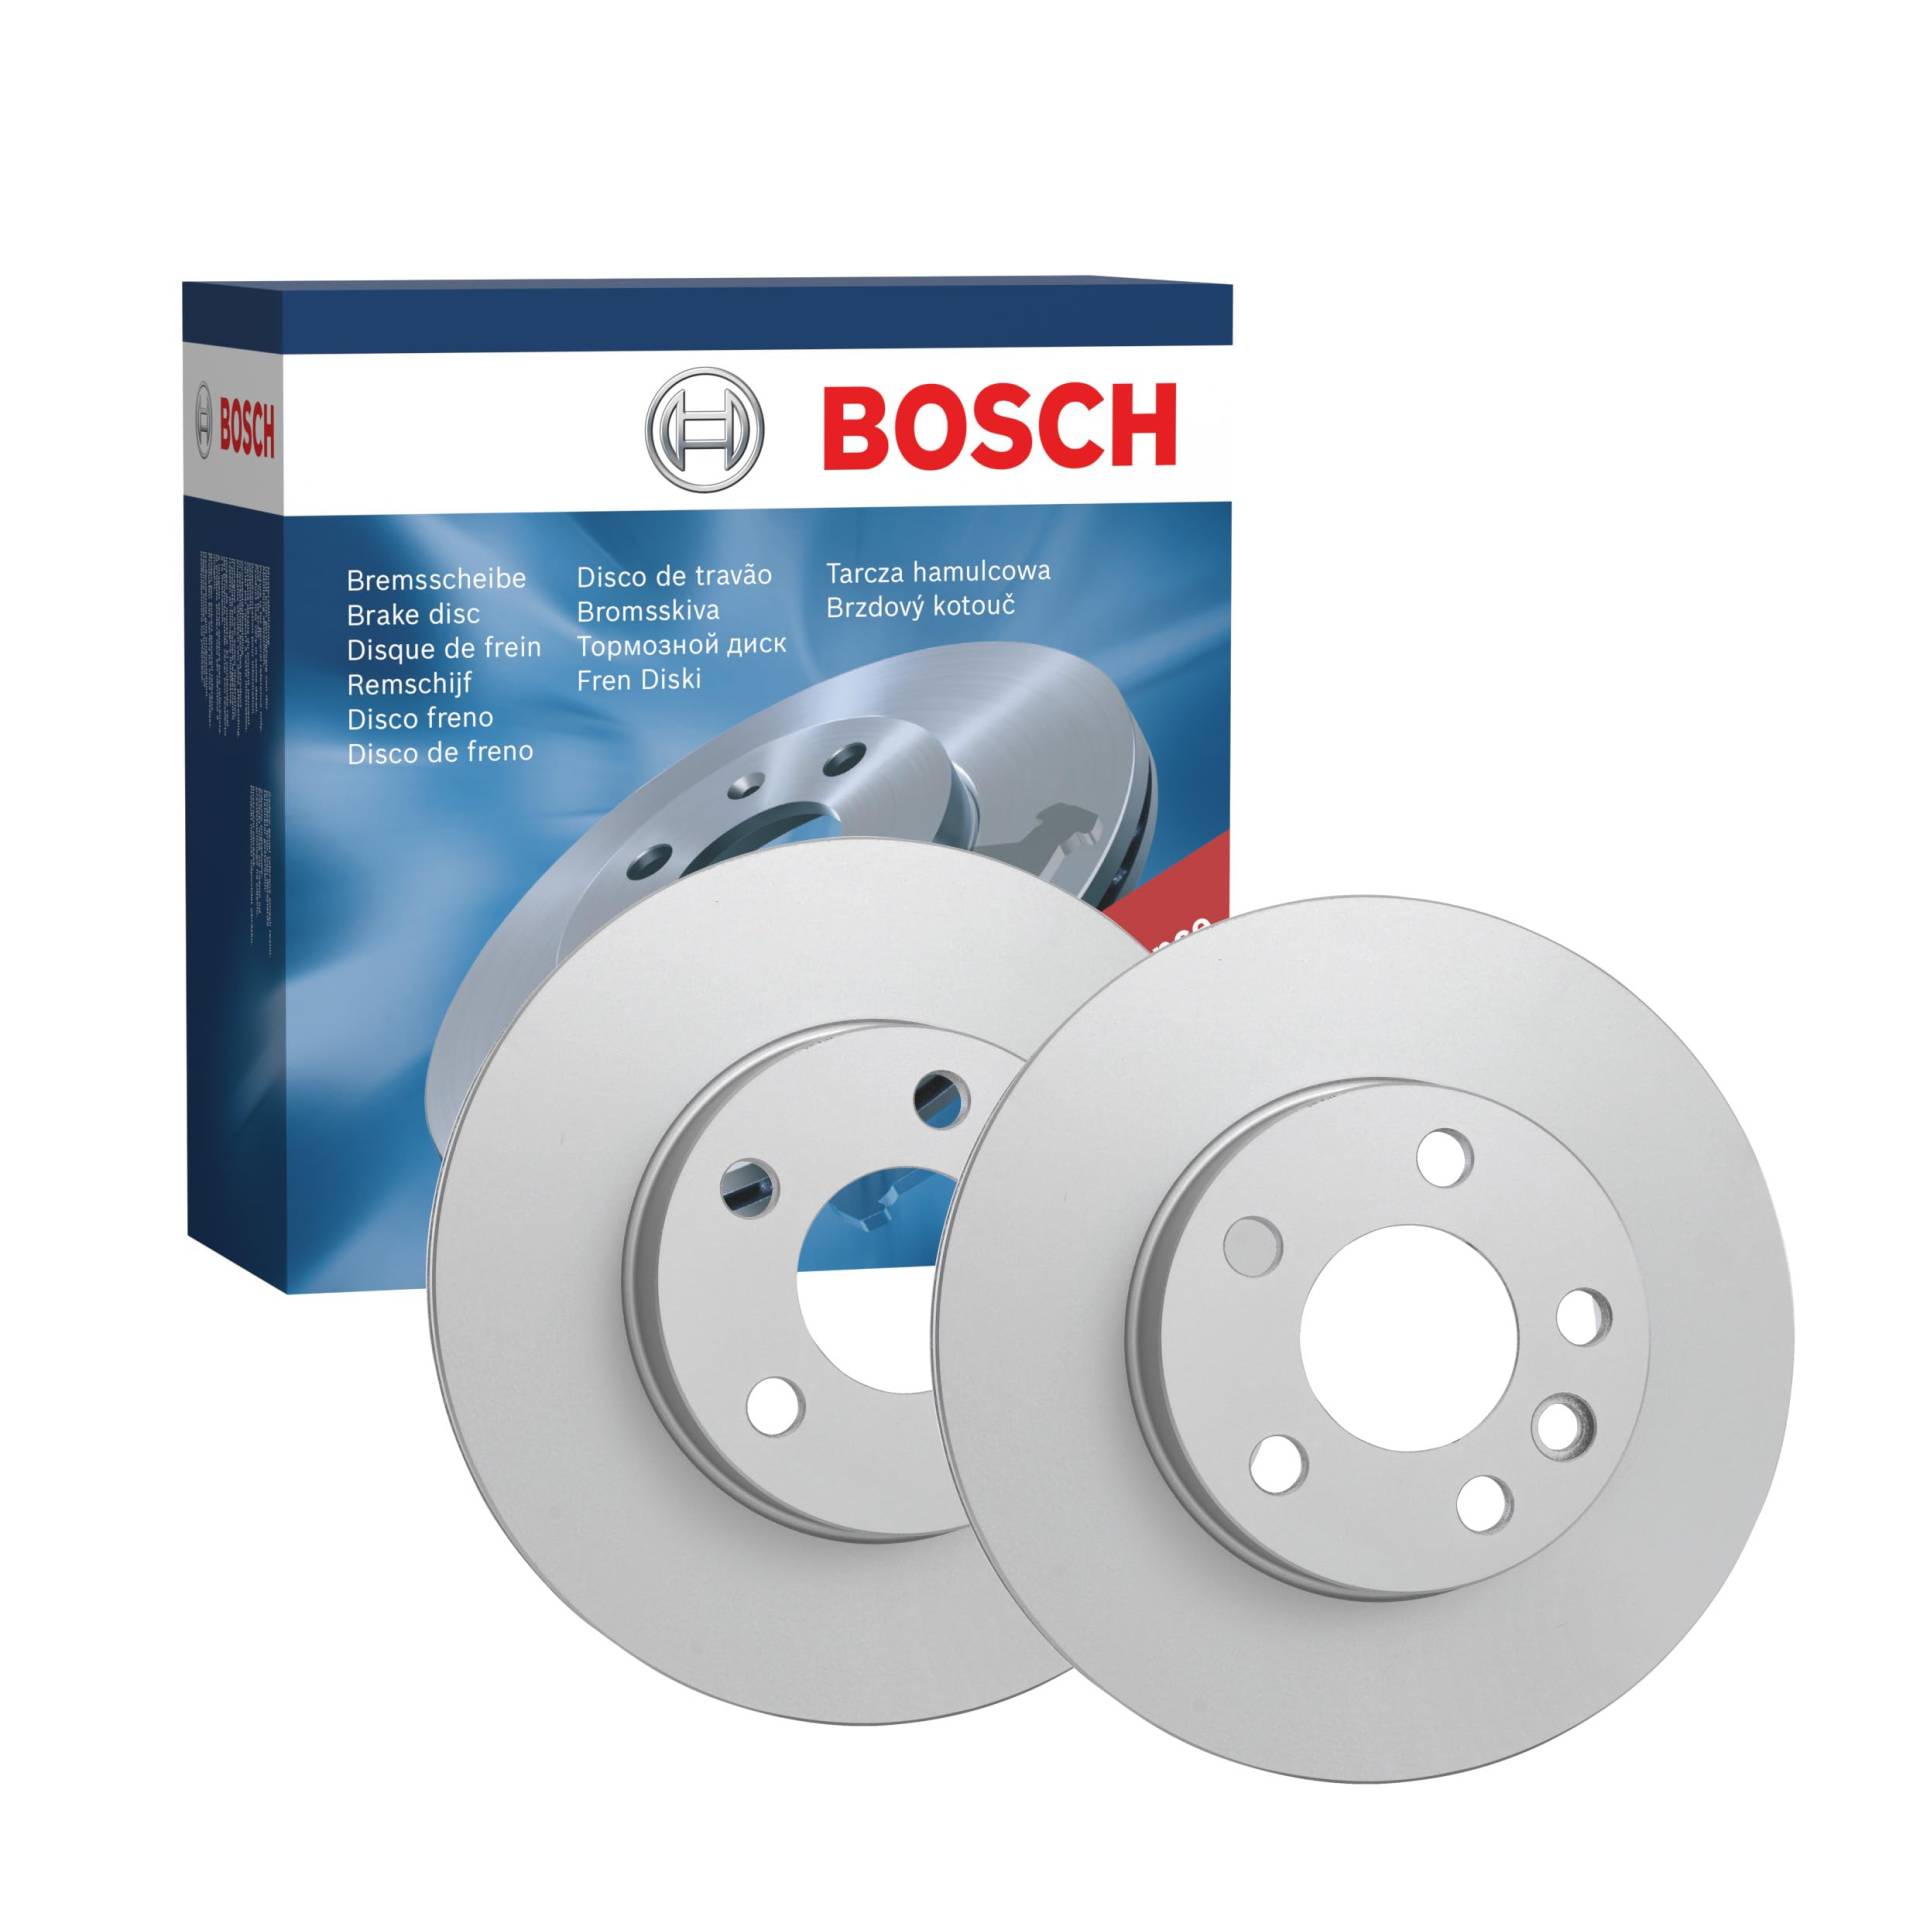 Bosch BD2051 Bremsscheiben - Vorderachse - ECE-R90 Zertifizierung - zwei Bremsscheiben pro Set von Bosch Automotive